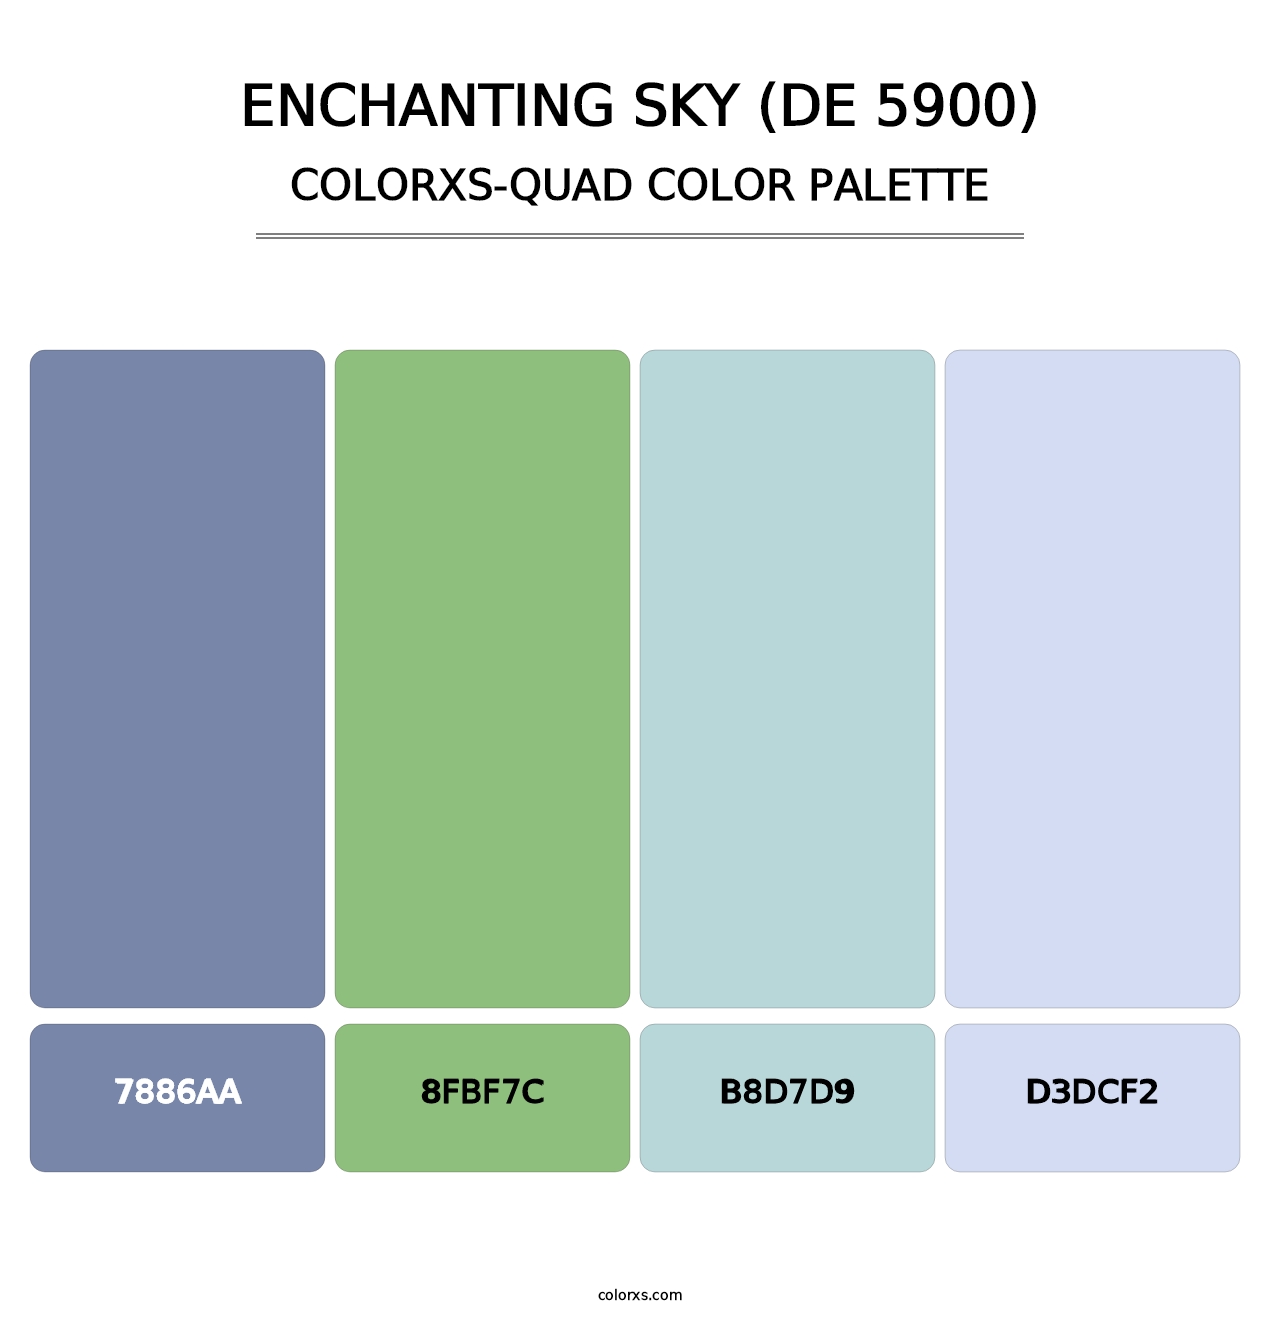 Enchanting Sky (DE 5900) - Colorxs Quad Palette